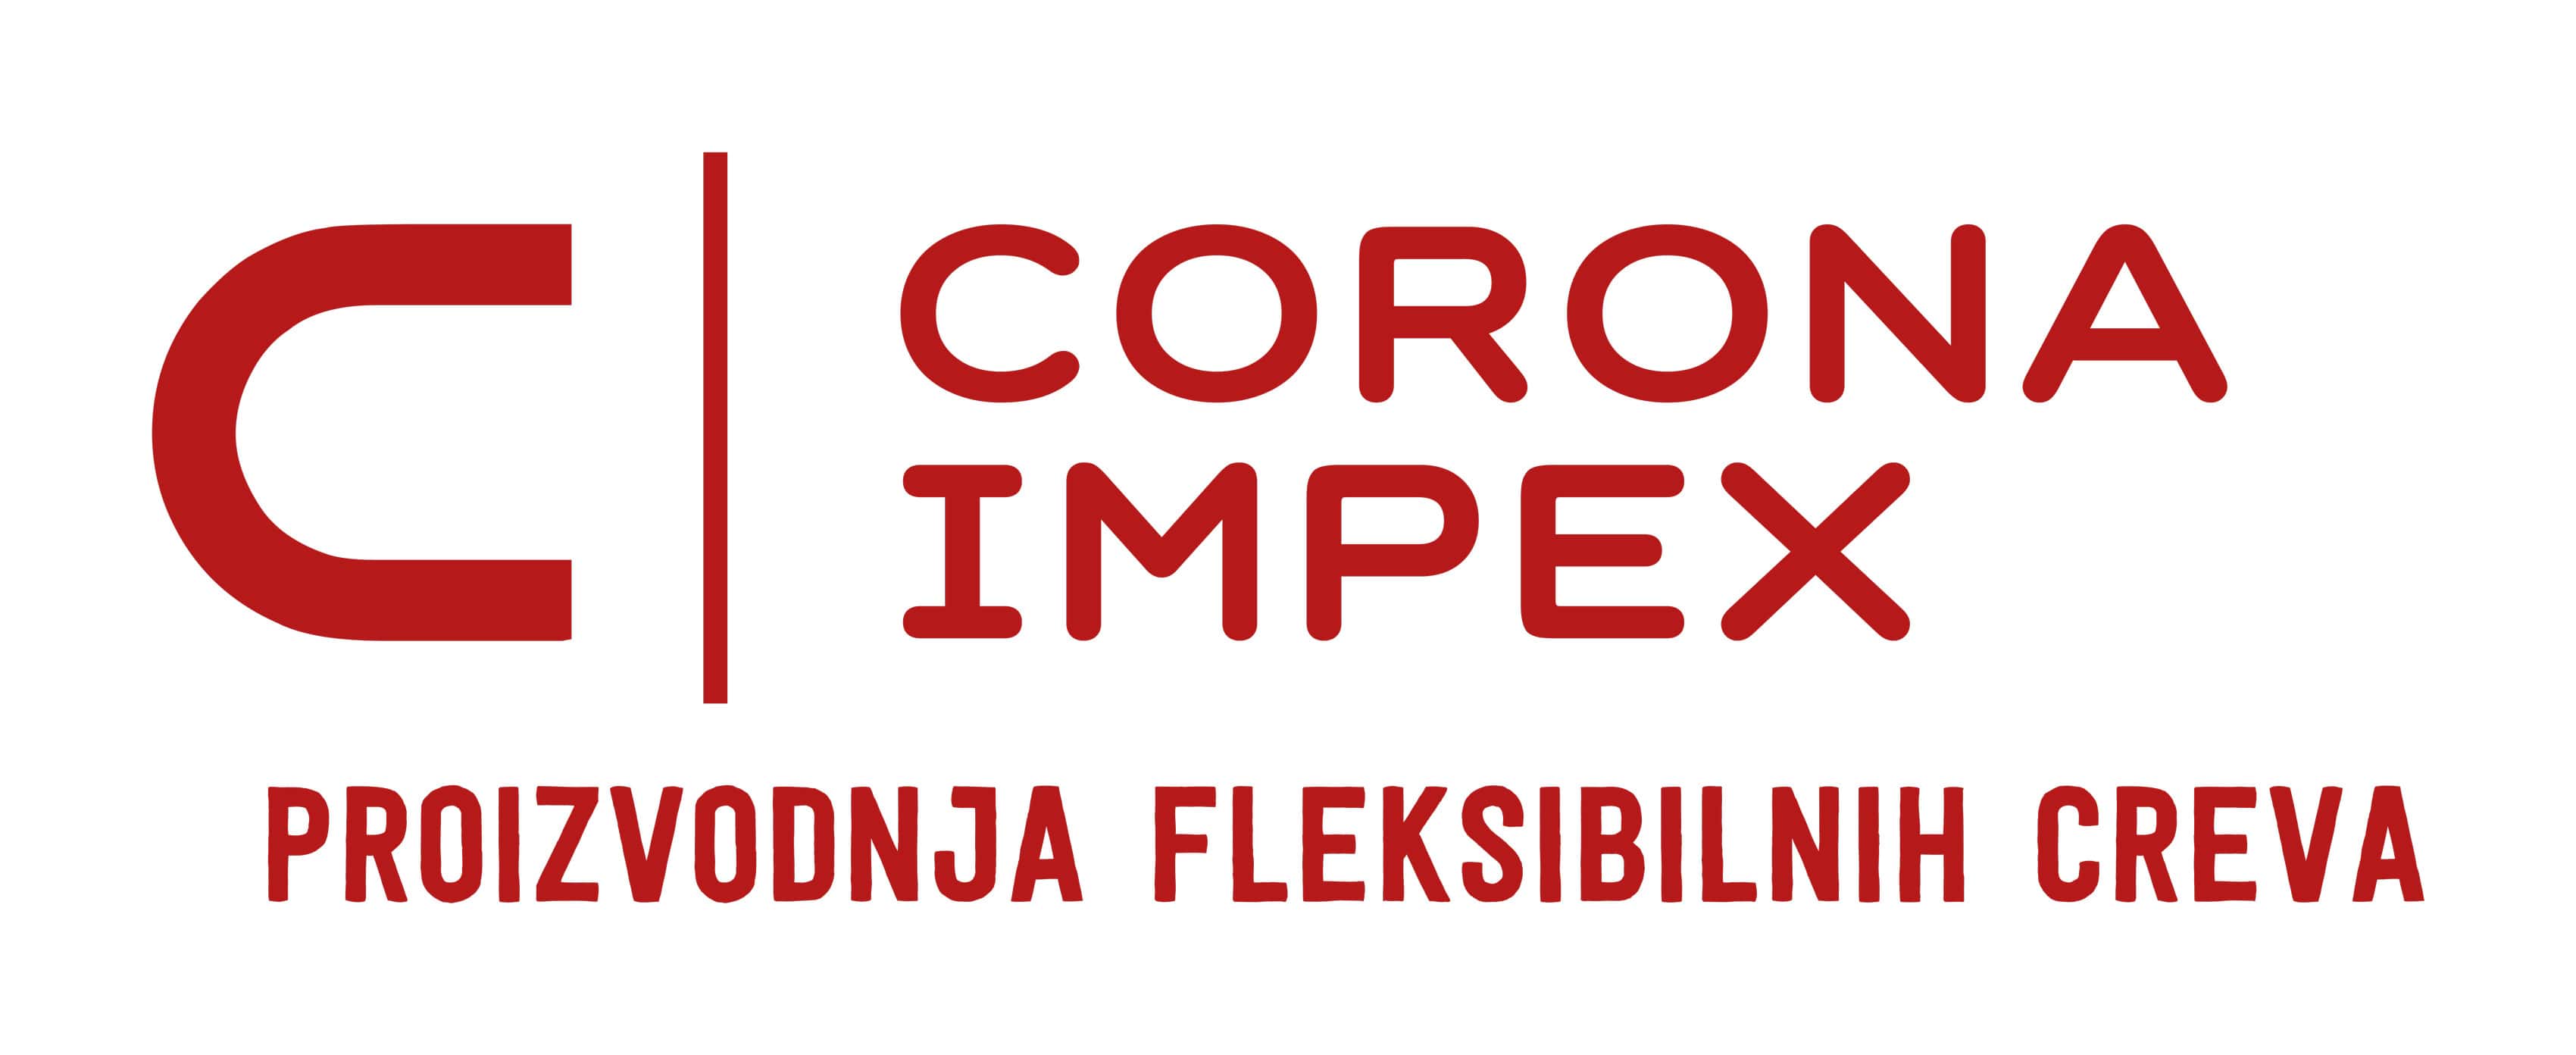 Corona impex